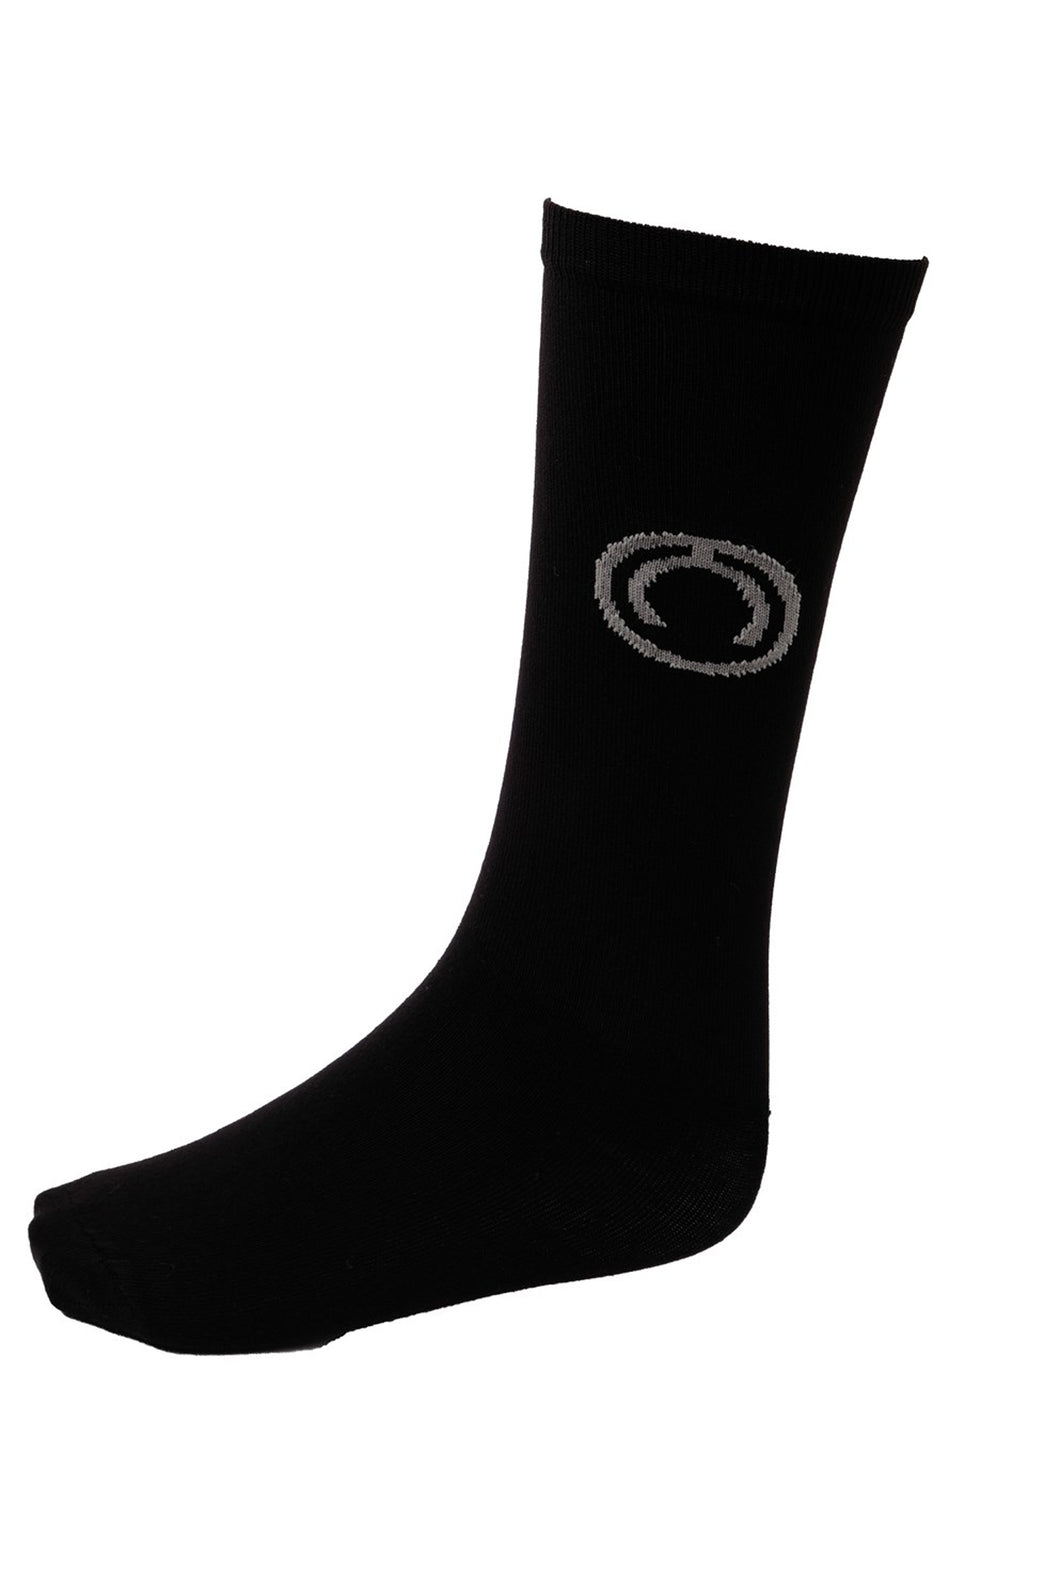 Black Short Nylon Socks - 3 pack